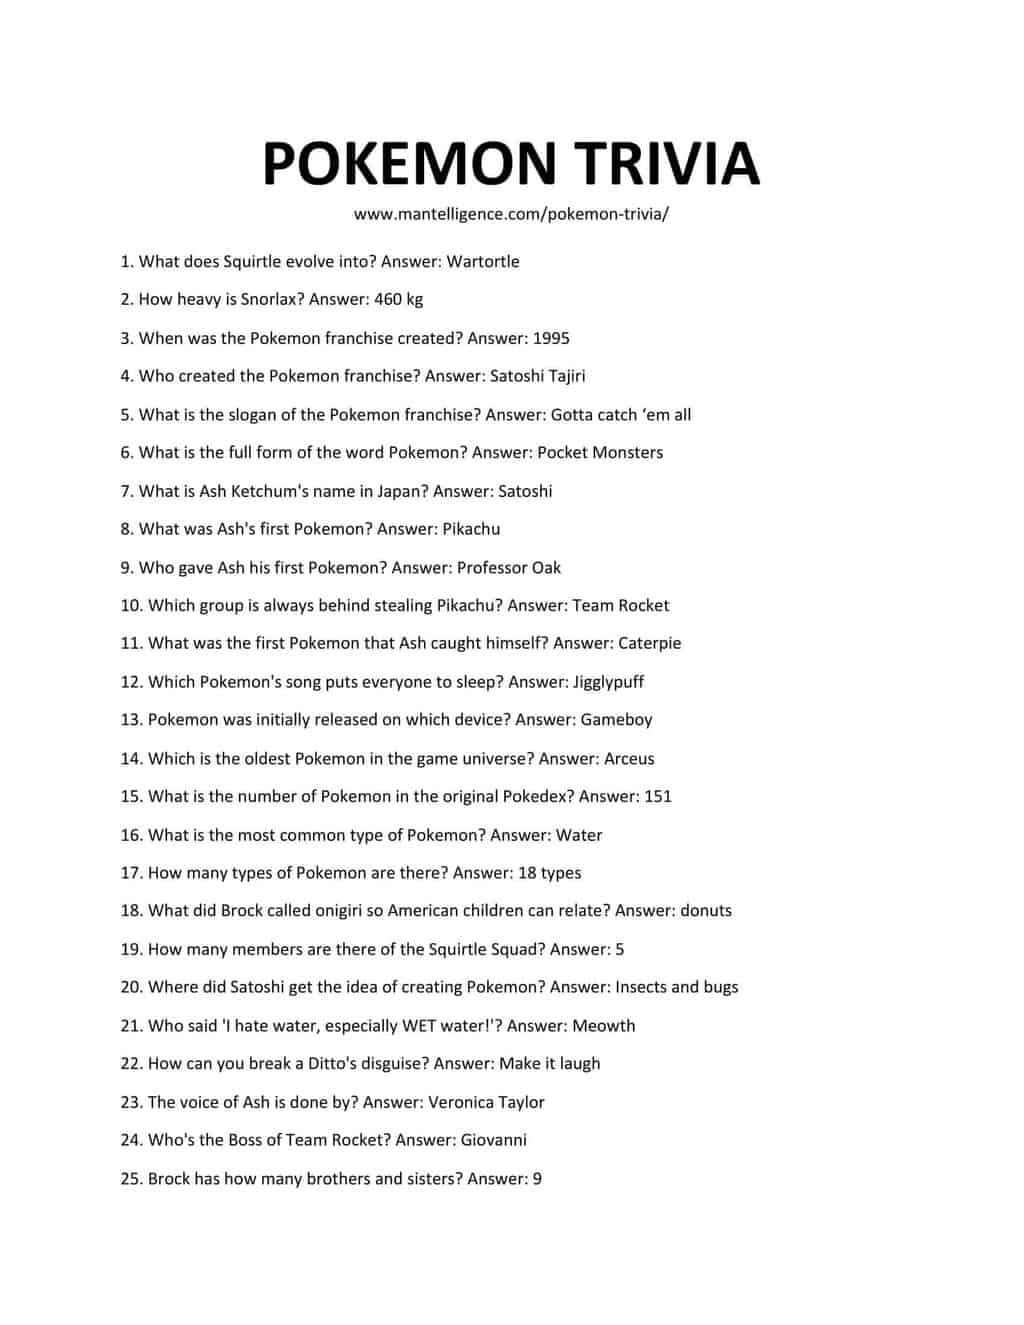 Pokémon Malaysia - 【Pokémon Quiz】 Here's today's question